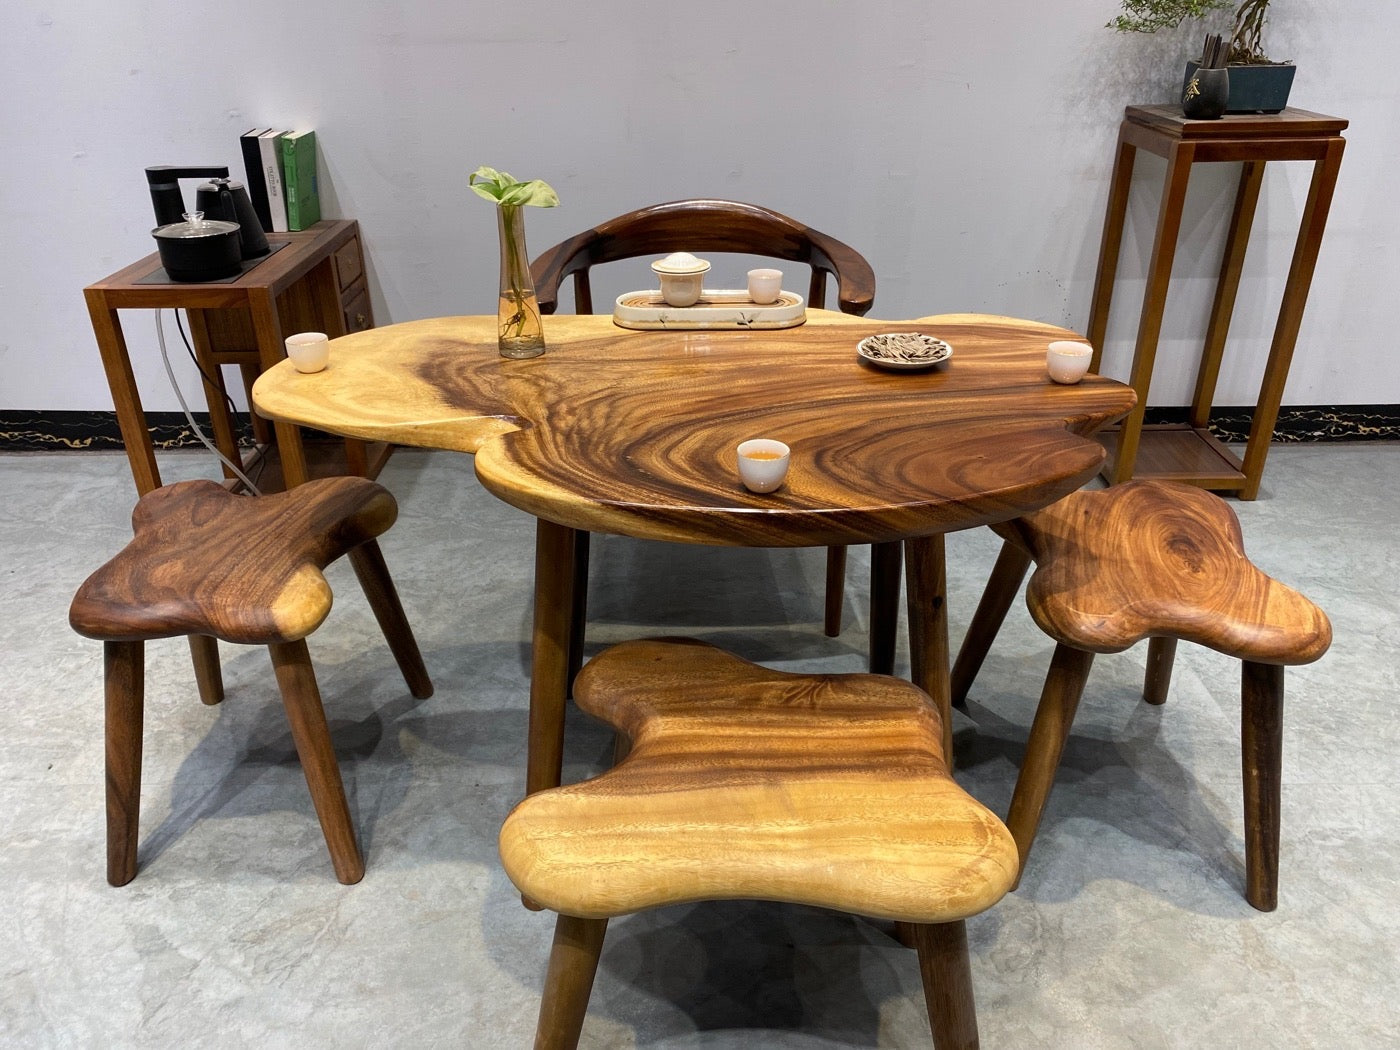 rangement de table basse, bois de table basse en forme de nuage, table basse rustique, tables basses uniques